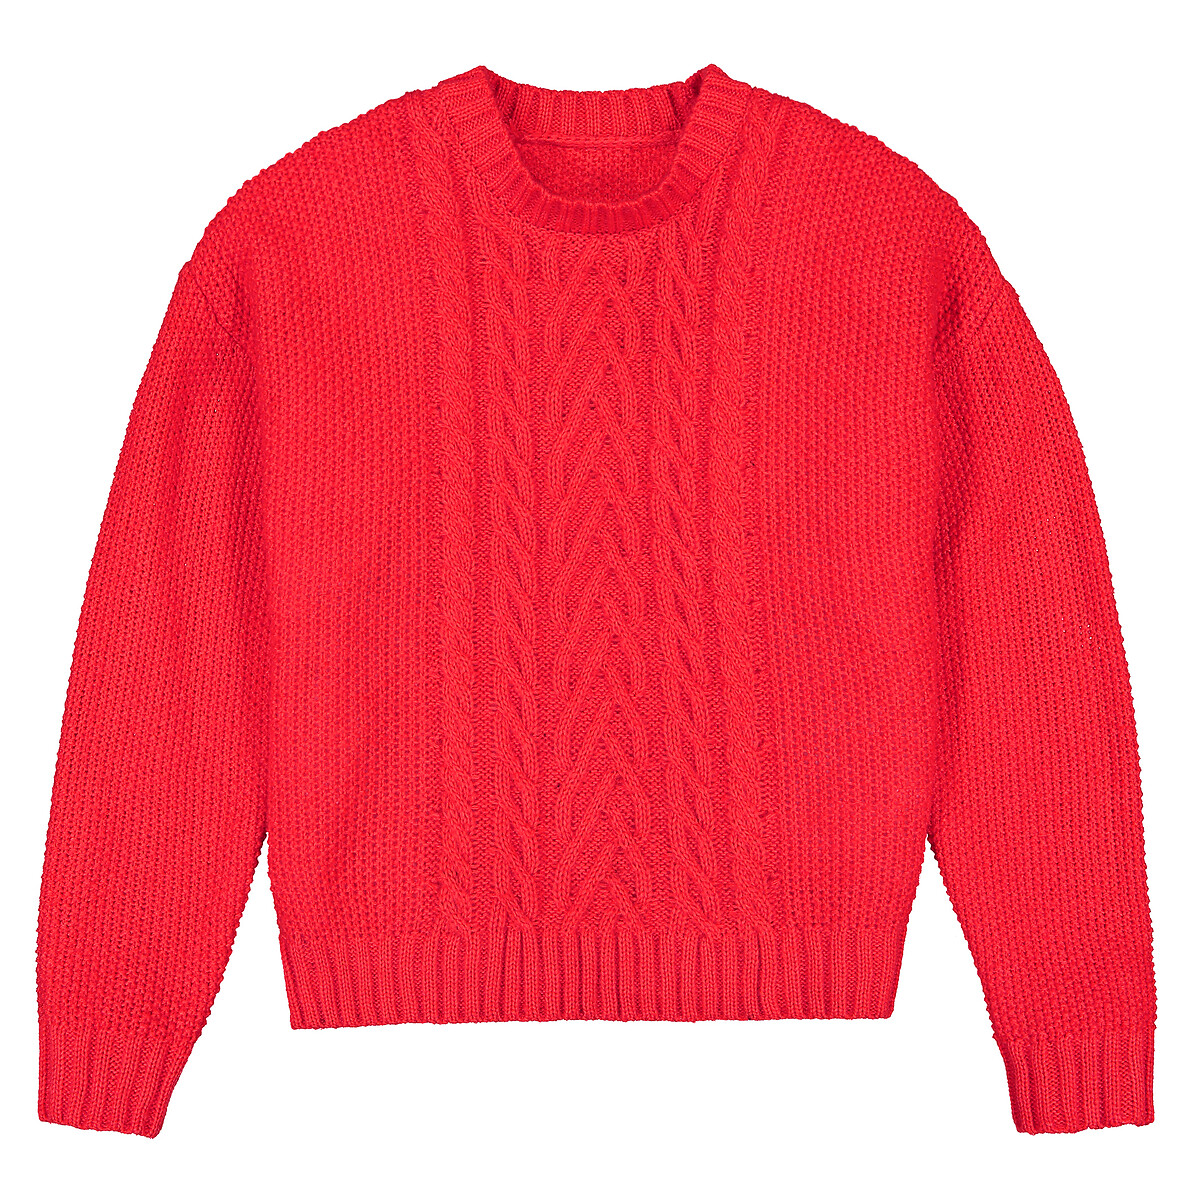 Пуловер LaRedoute С круглым вырезом из плотного трикотажа 10-18 лет 14 лет - 156 см красный, размер 14 лет - 156 см - фото 3